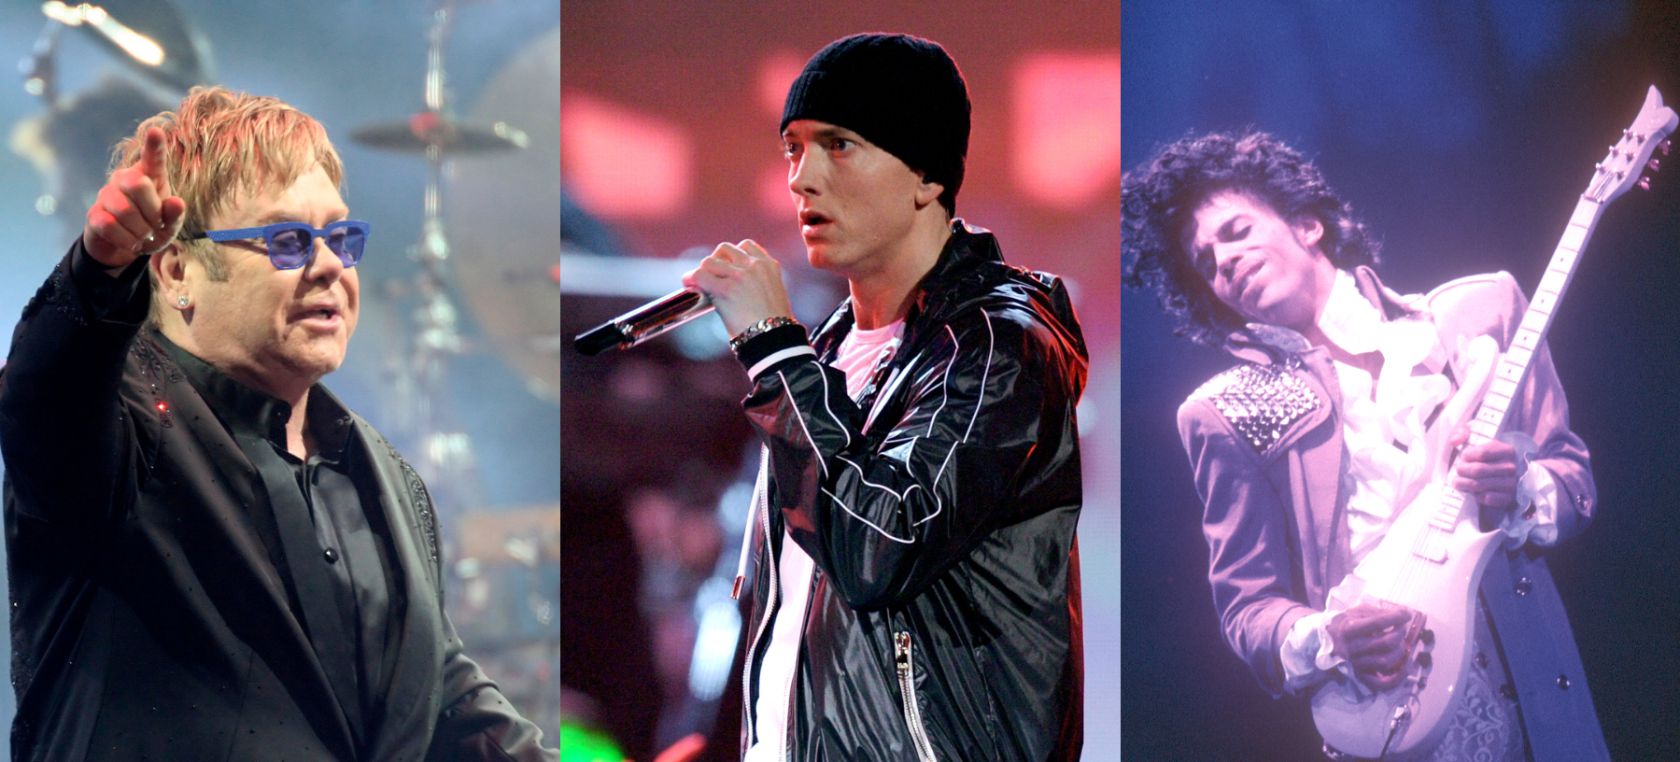 Carpas koi o gafas a 16 grados: Las demandas de Elton John, Eminem o Prince ‘detrás del escenario’